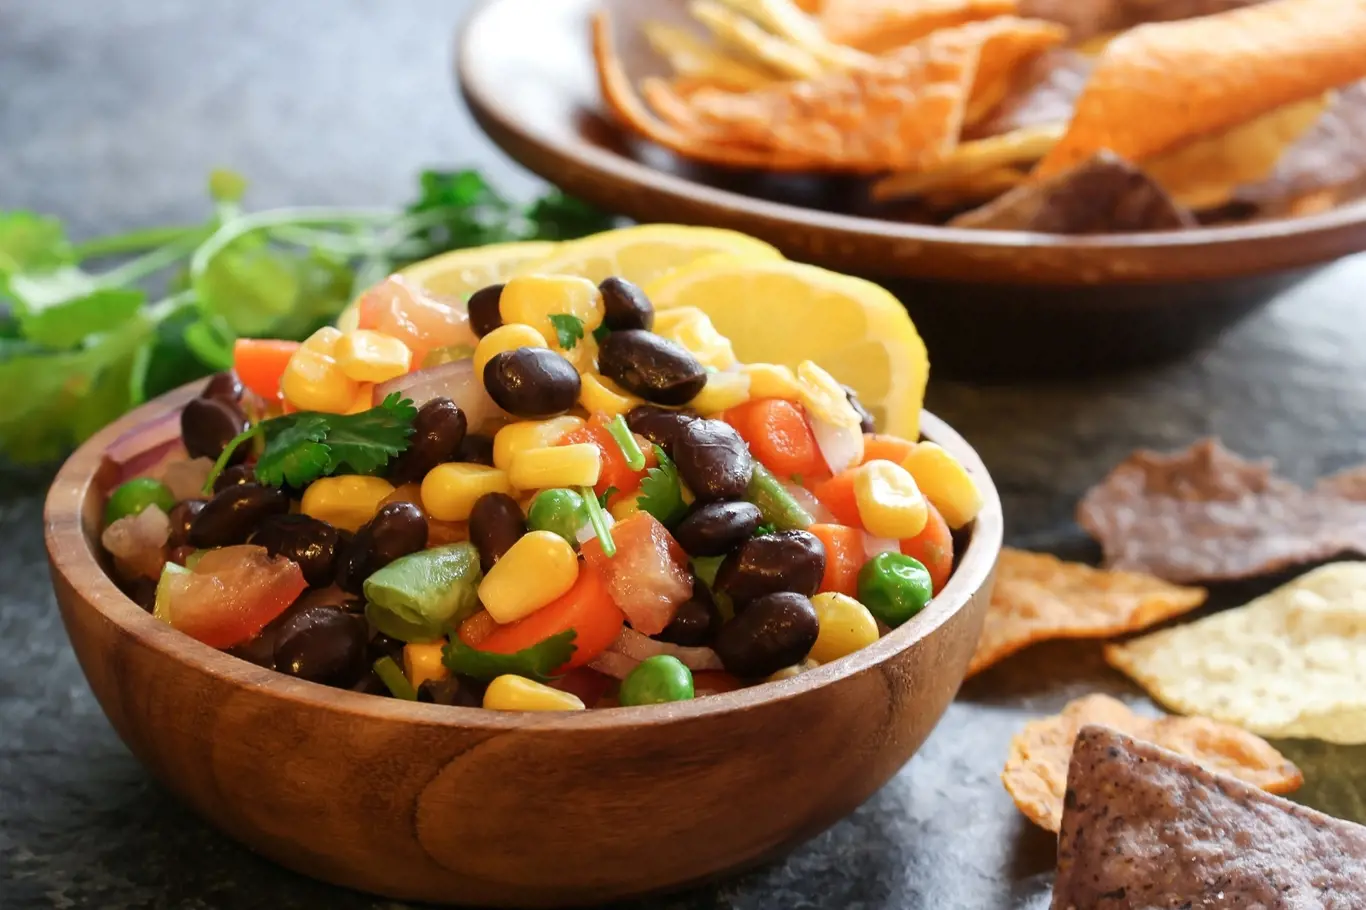 Zeleninový salát je oblíbeným pokrmem pro lehké večeře. Přidejte do něj červené fazole, které patří k nejmocnějším antioxidantům, které chrání organismus před stárnutím a škodlivými vnějšími vlivy.